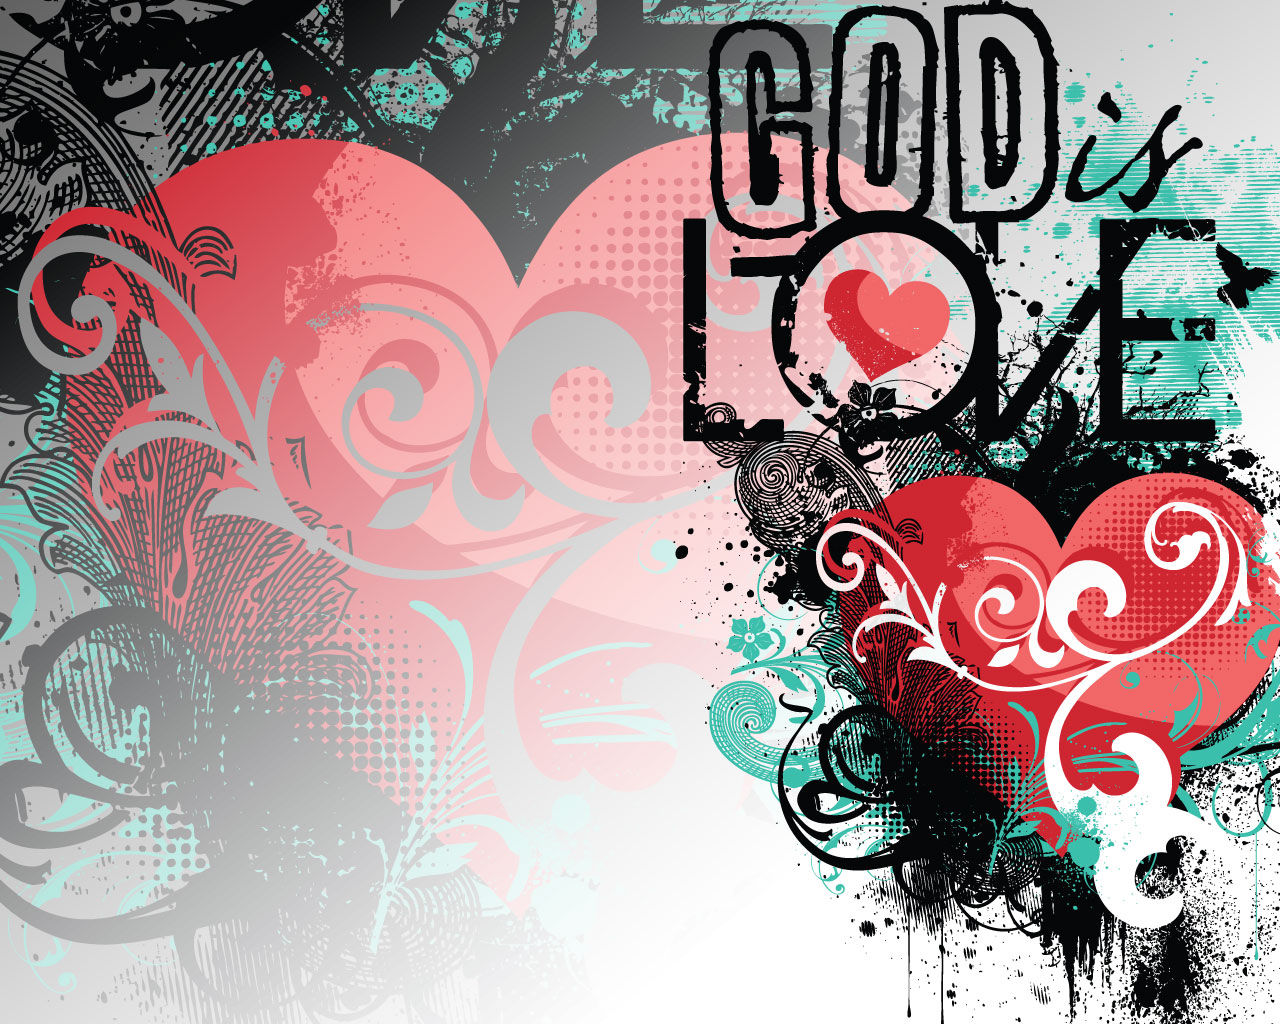 신은 사랑이다 바탕 화면,본문,그래픽 디자인,폰트,심장,삽화